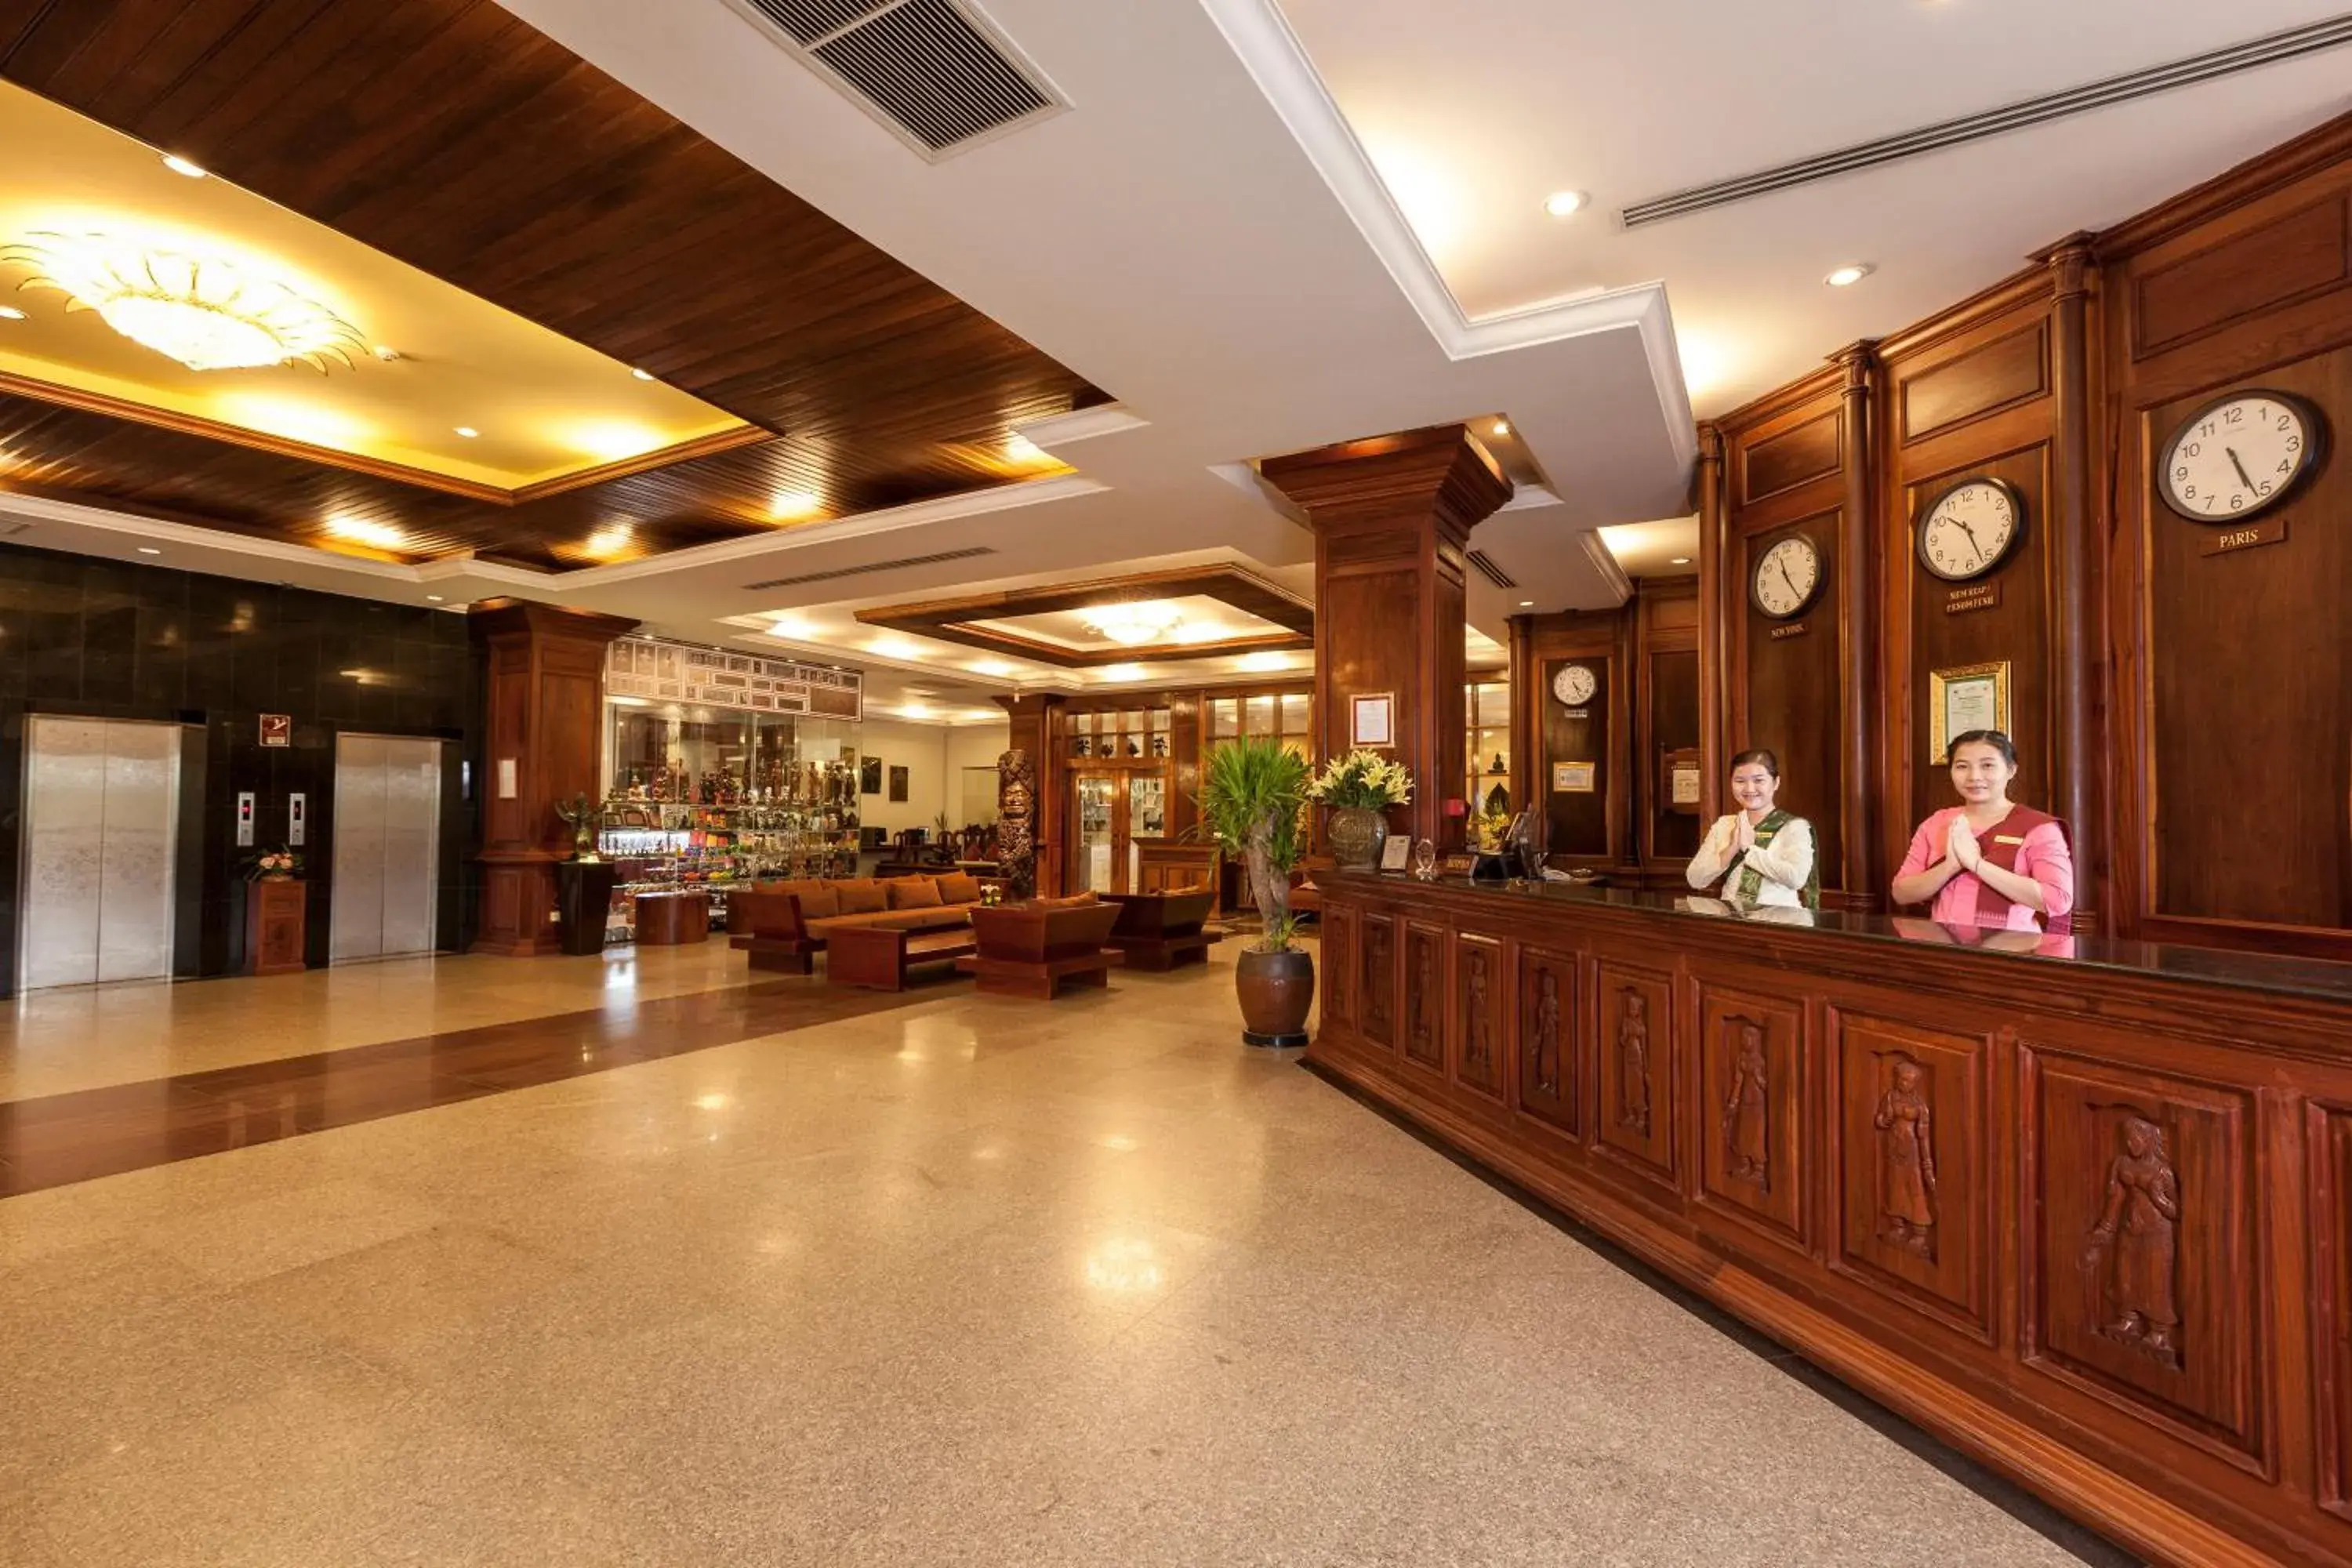 Lobby or reception, Lobby/Reception in Angkor Paradise Hotel